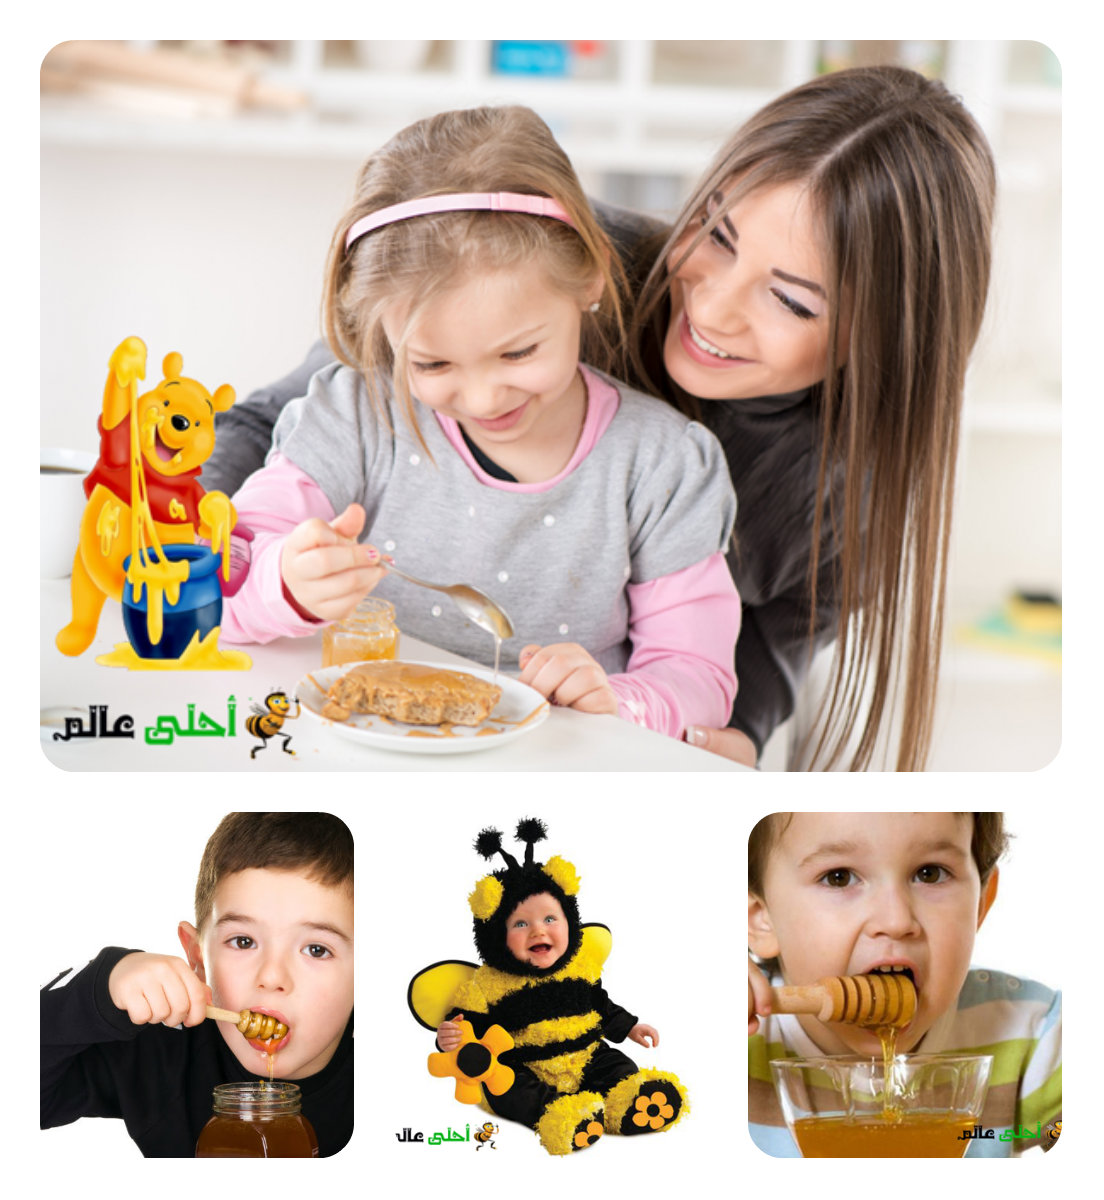 فوائد العسل للأطفال, العسل للاطفال, فوائد العسل, نحلة احلى عالم .موقع نحلة, النحل, العسل